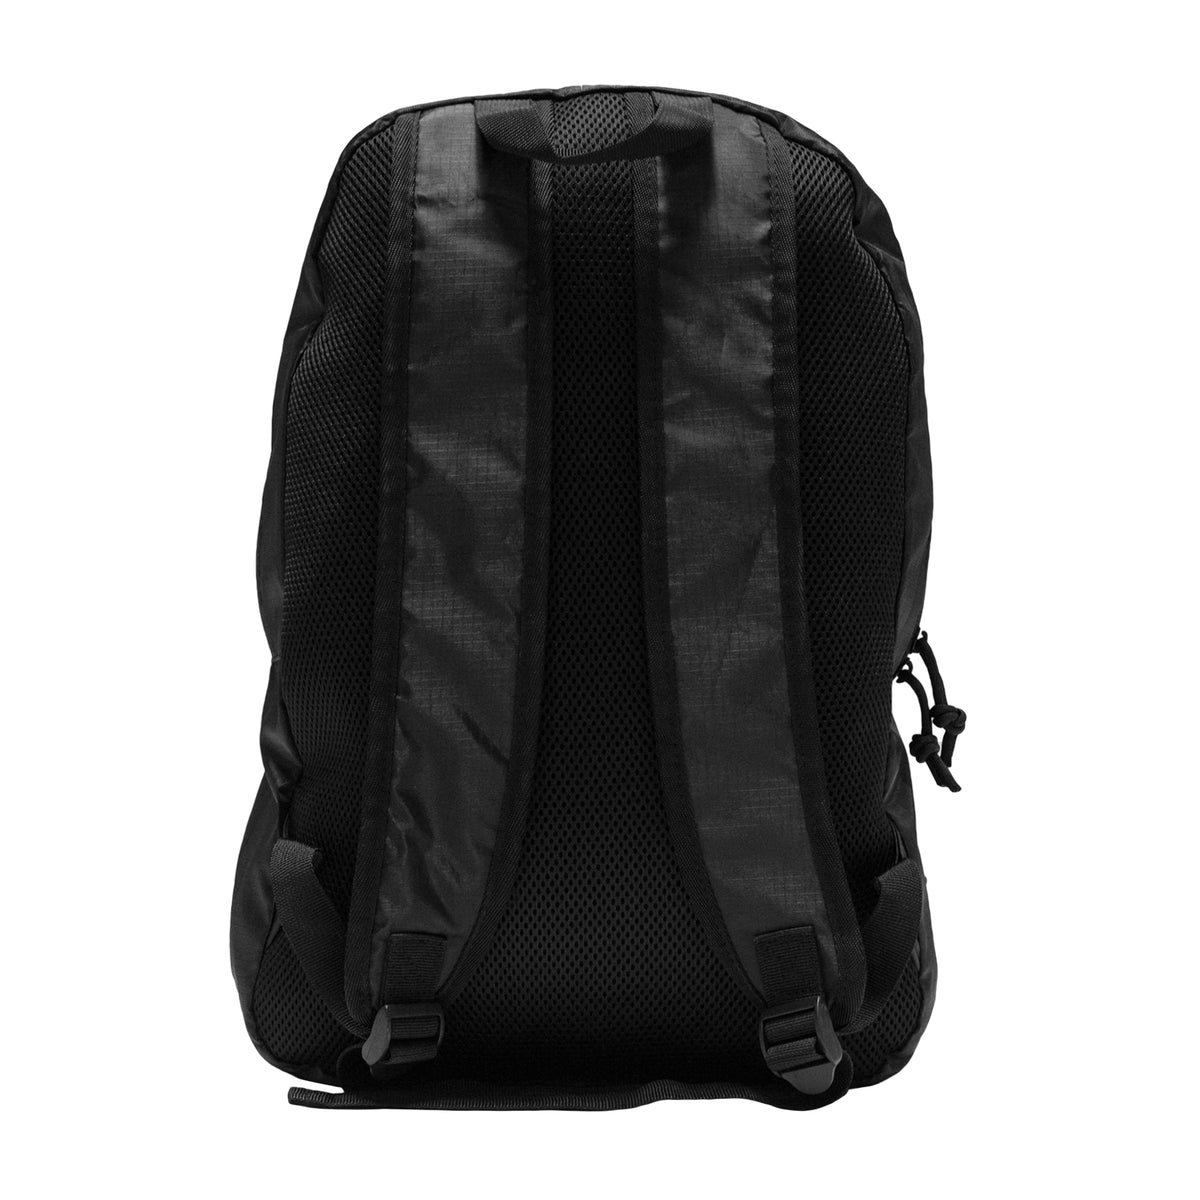 LVFT. Packable Backpack - Black | Live Fit Apparel | LVFT - Live Fit ...